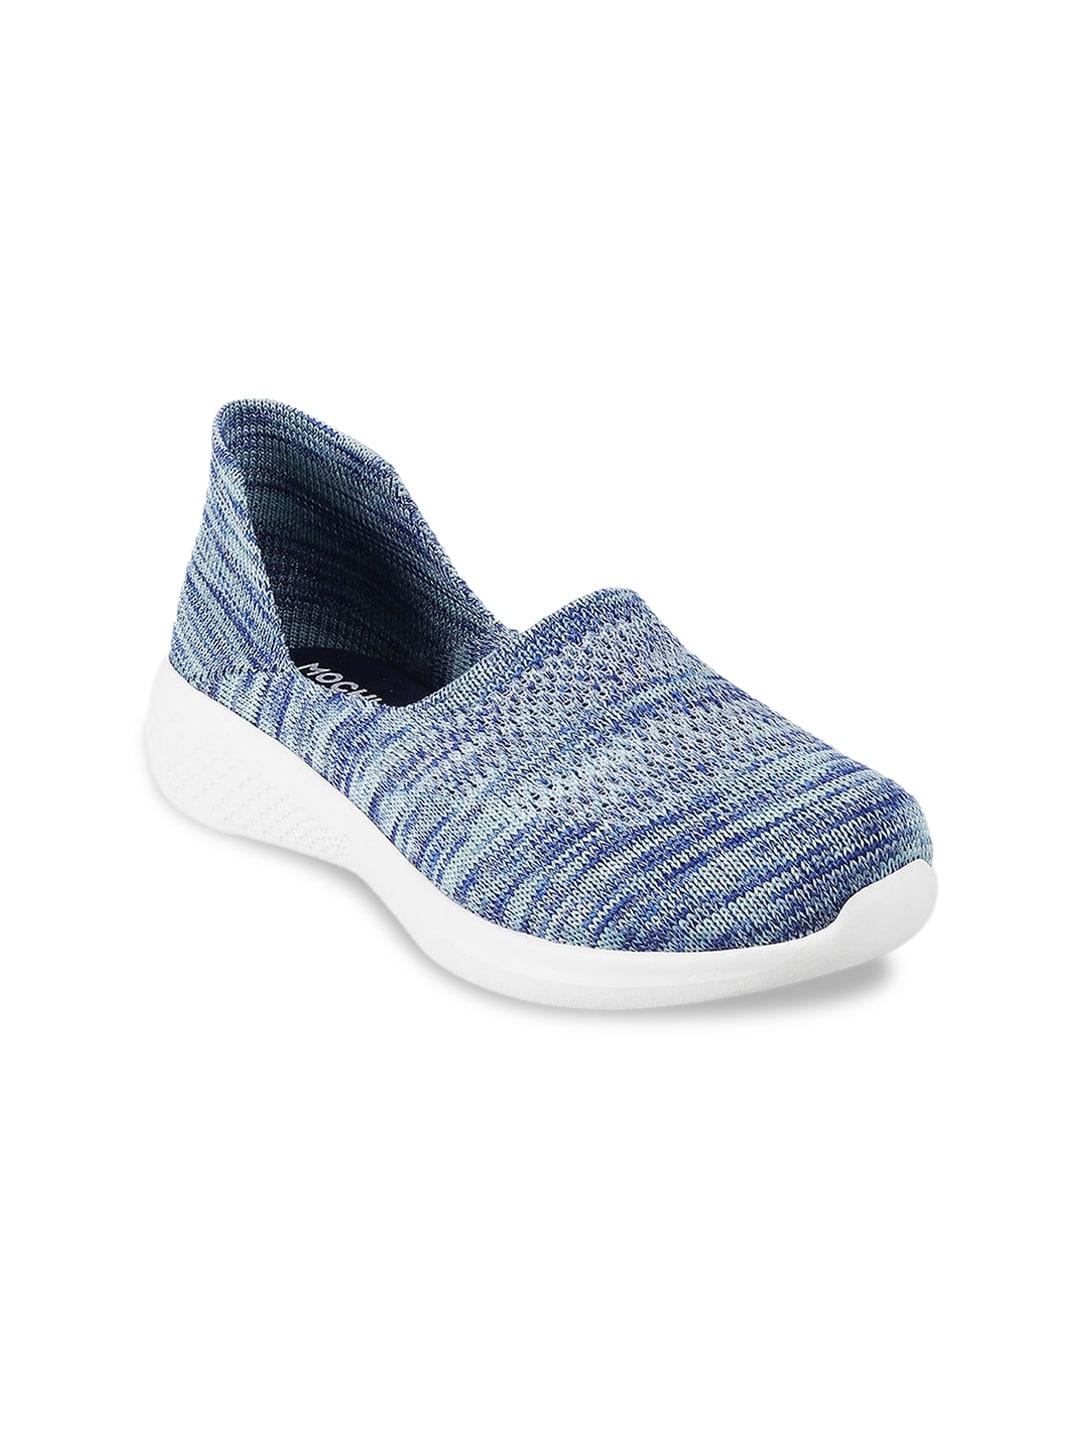 mochi women blue woven design slip-on sneakers